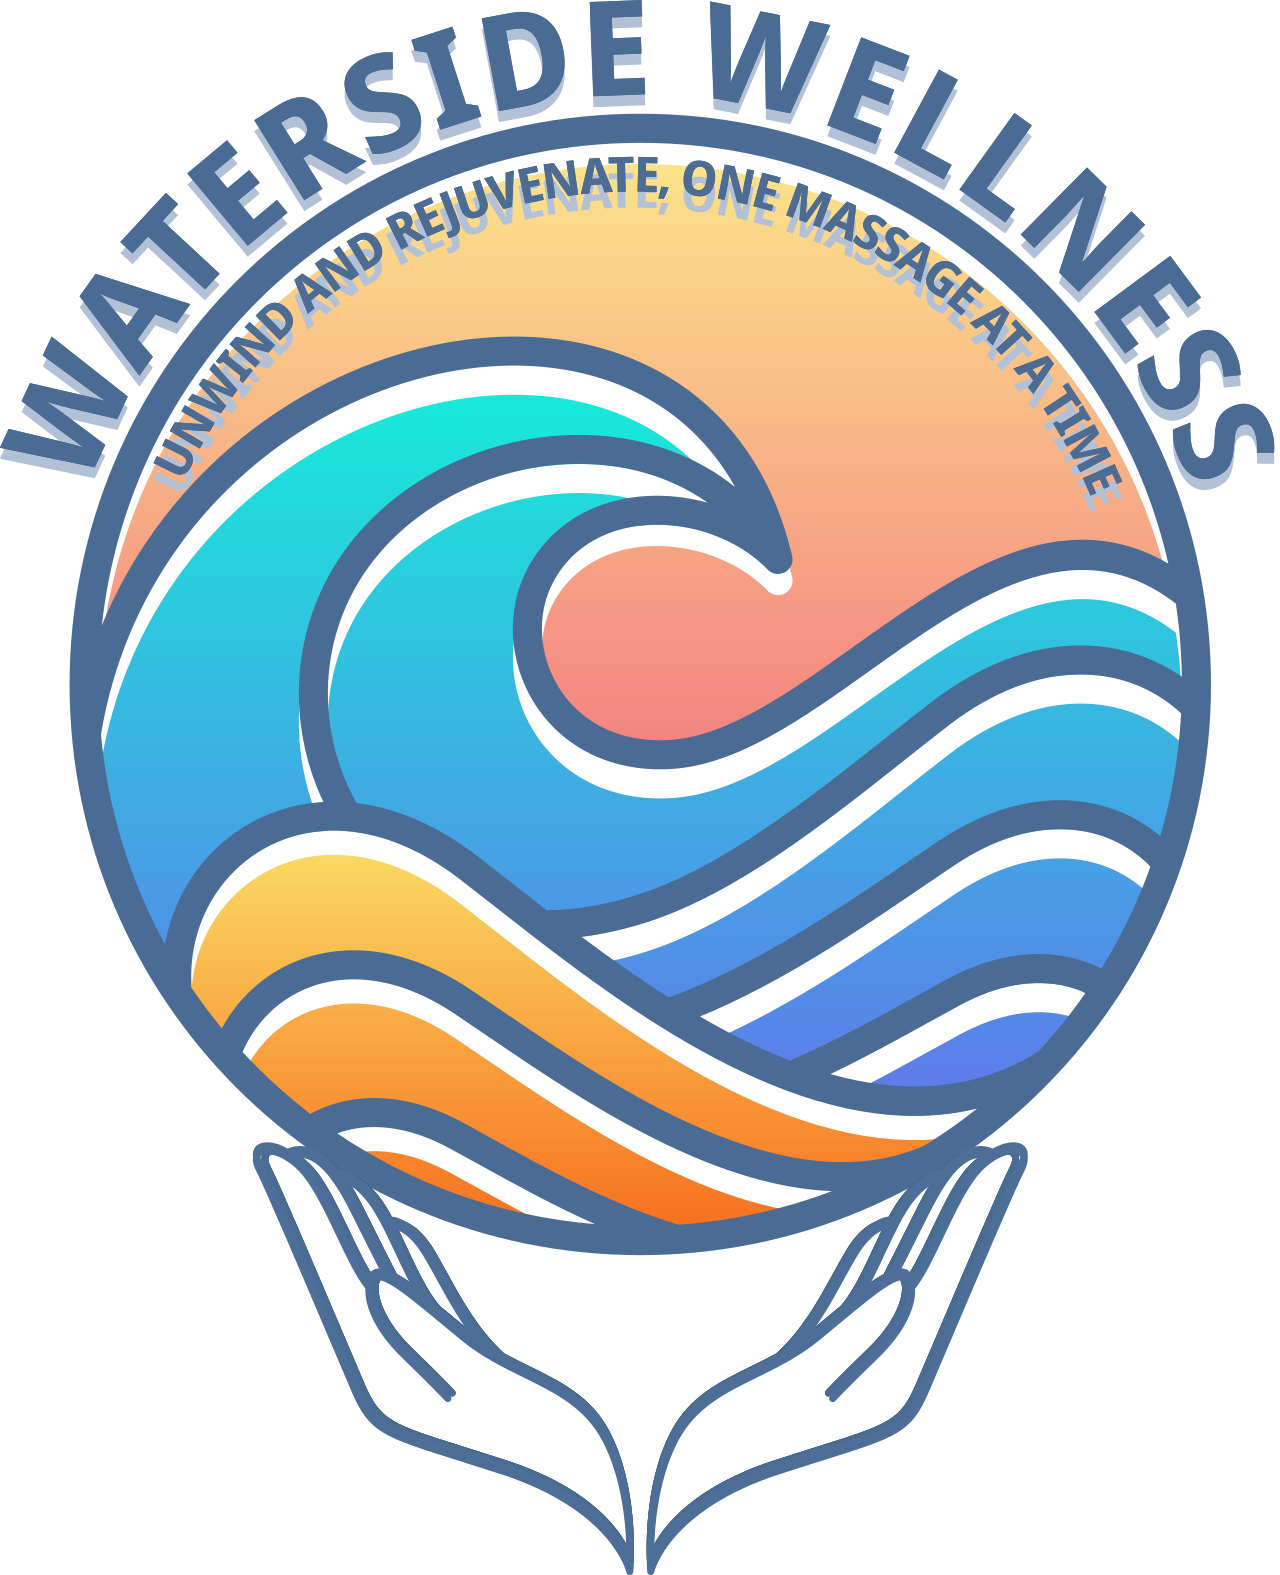 WATERSIDE WELLNESS's logo